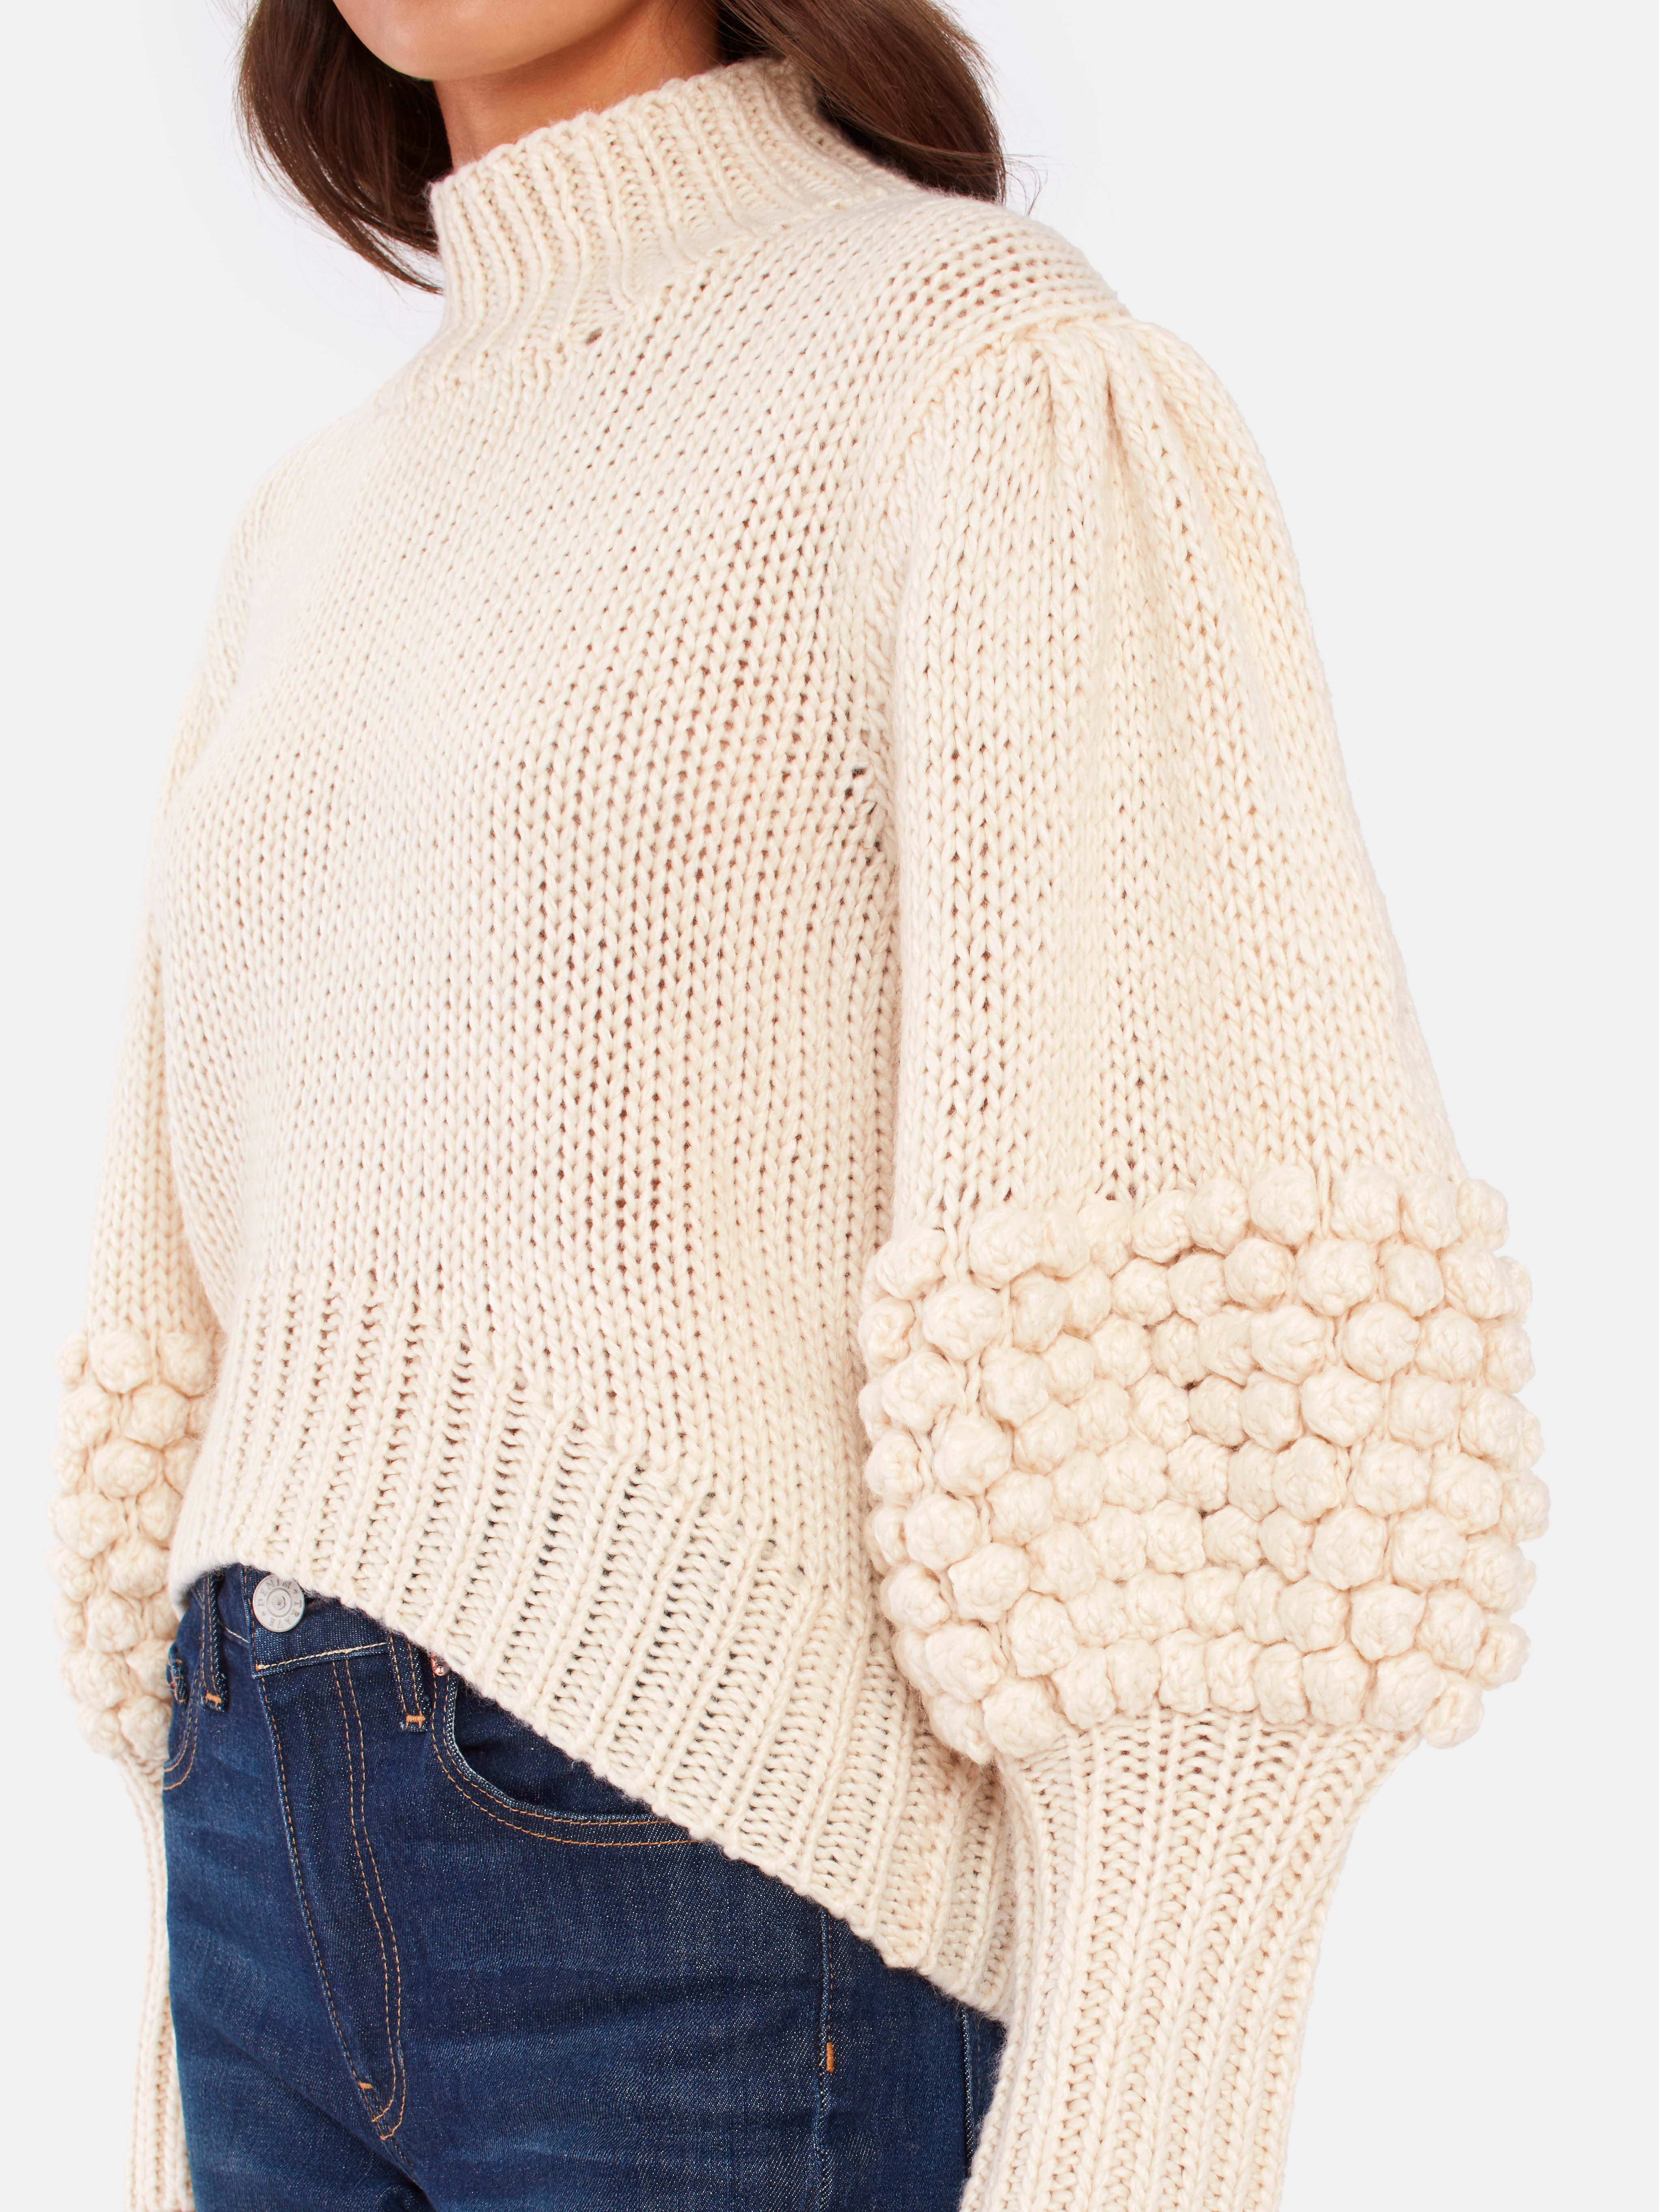 Tight Knit Sweater On Sale 57 Off Valdur Es